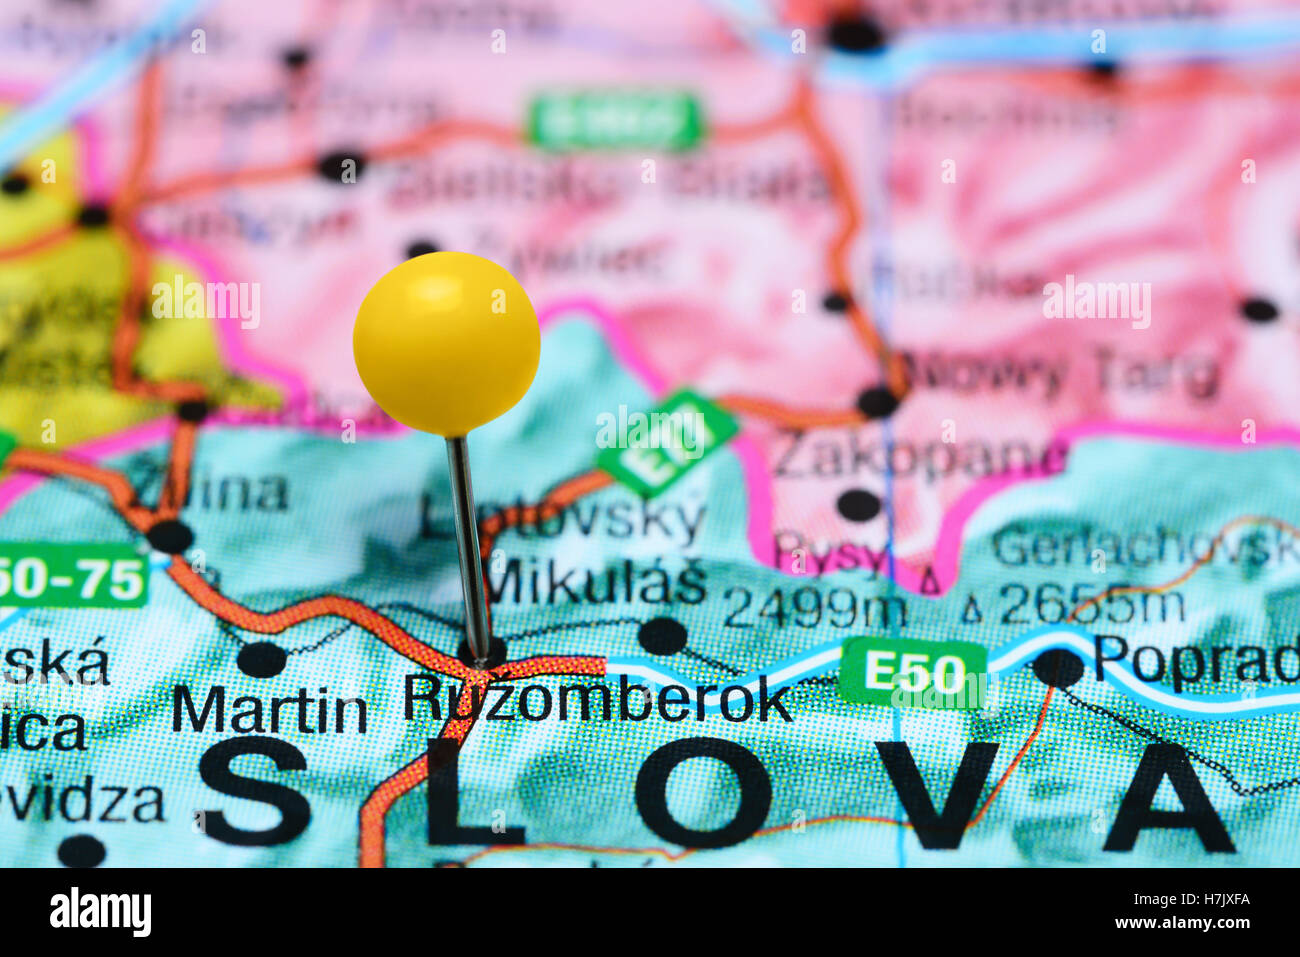 Ruzomberok pinned on a map of Slovakia Stock Photo